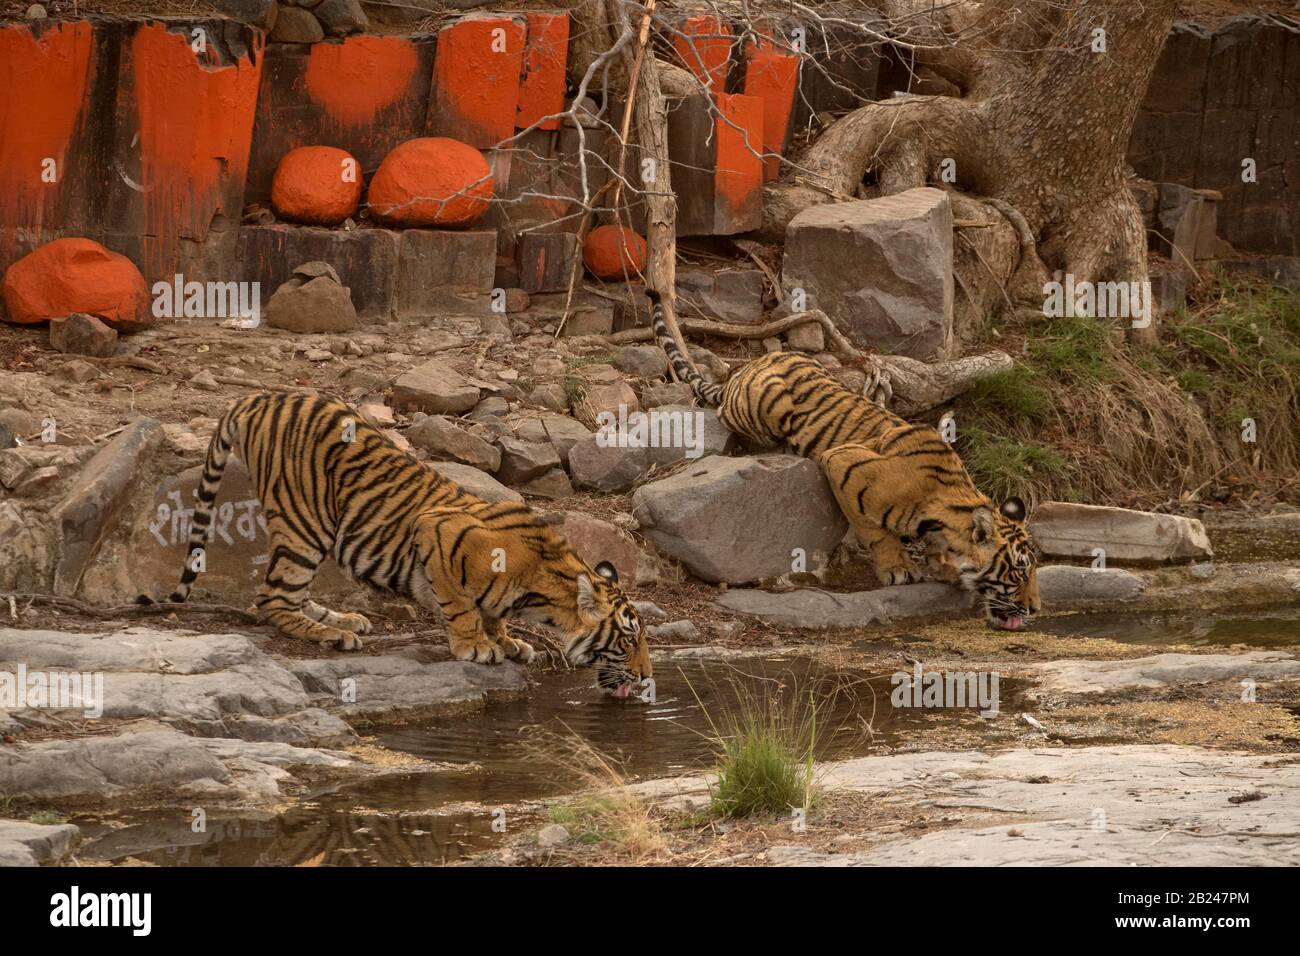 Deux tigres sauvages (Panthera tigris tigris) buvant de l'eau d'une flaque rocheuse près d'un temple hindou, parc national de Ranthambore, Rajasthan, Inida Banque D'Images